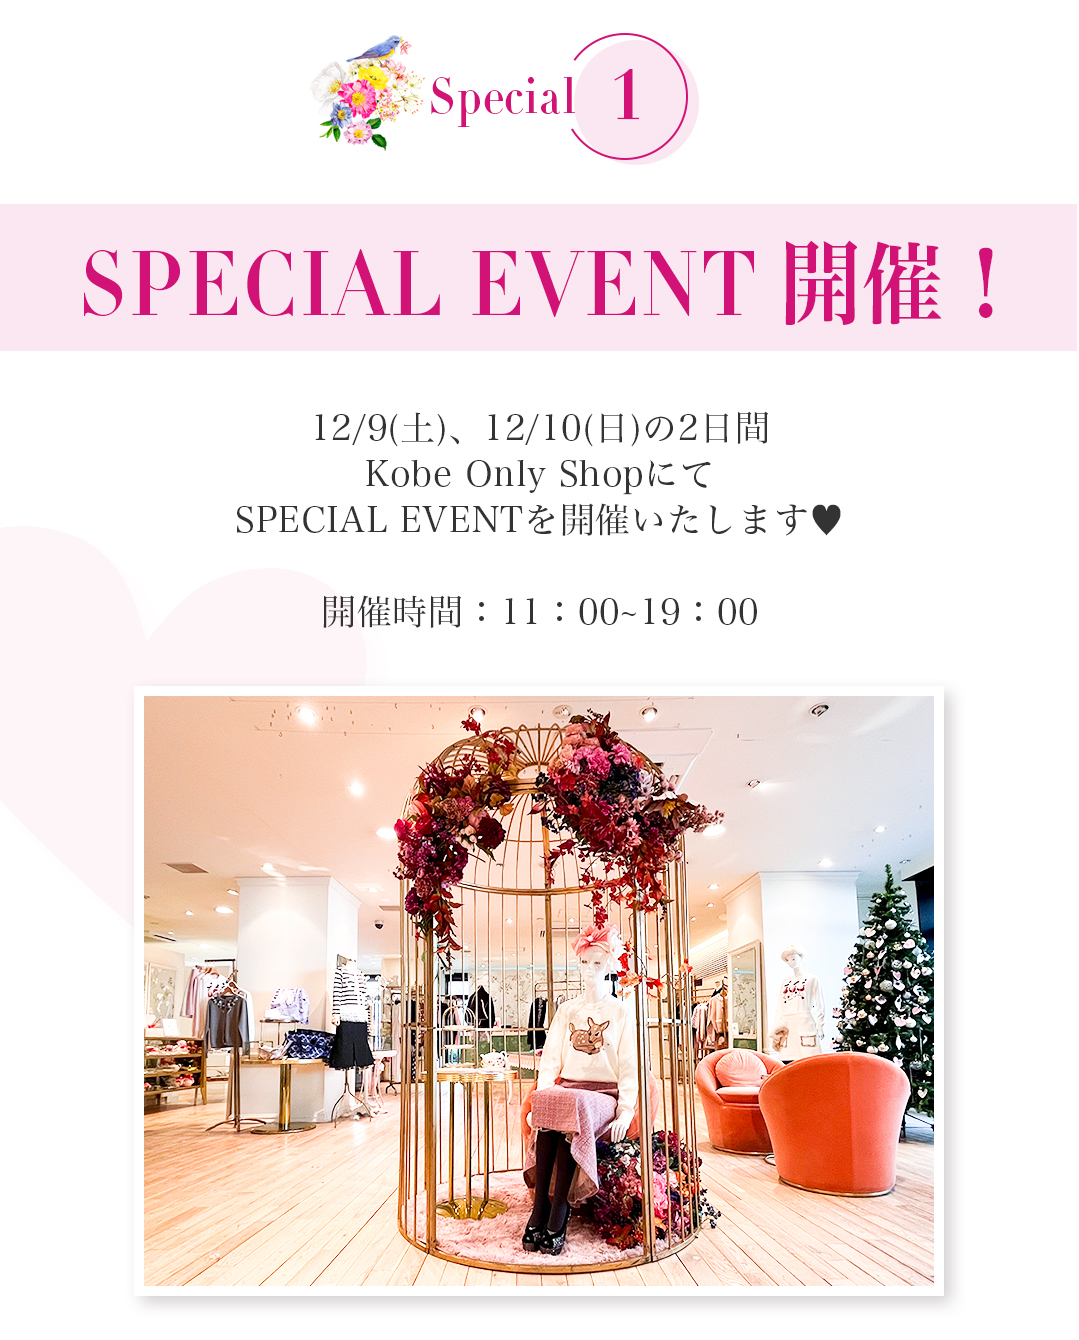 12/9(土)、12/10(日)の2日間Kobe Only Shopk?SPECIAL EVENTを開催いたします